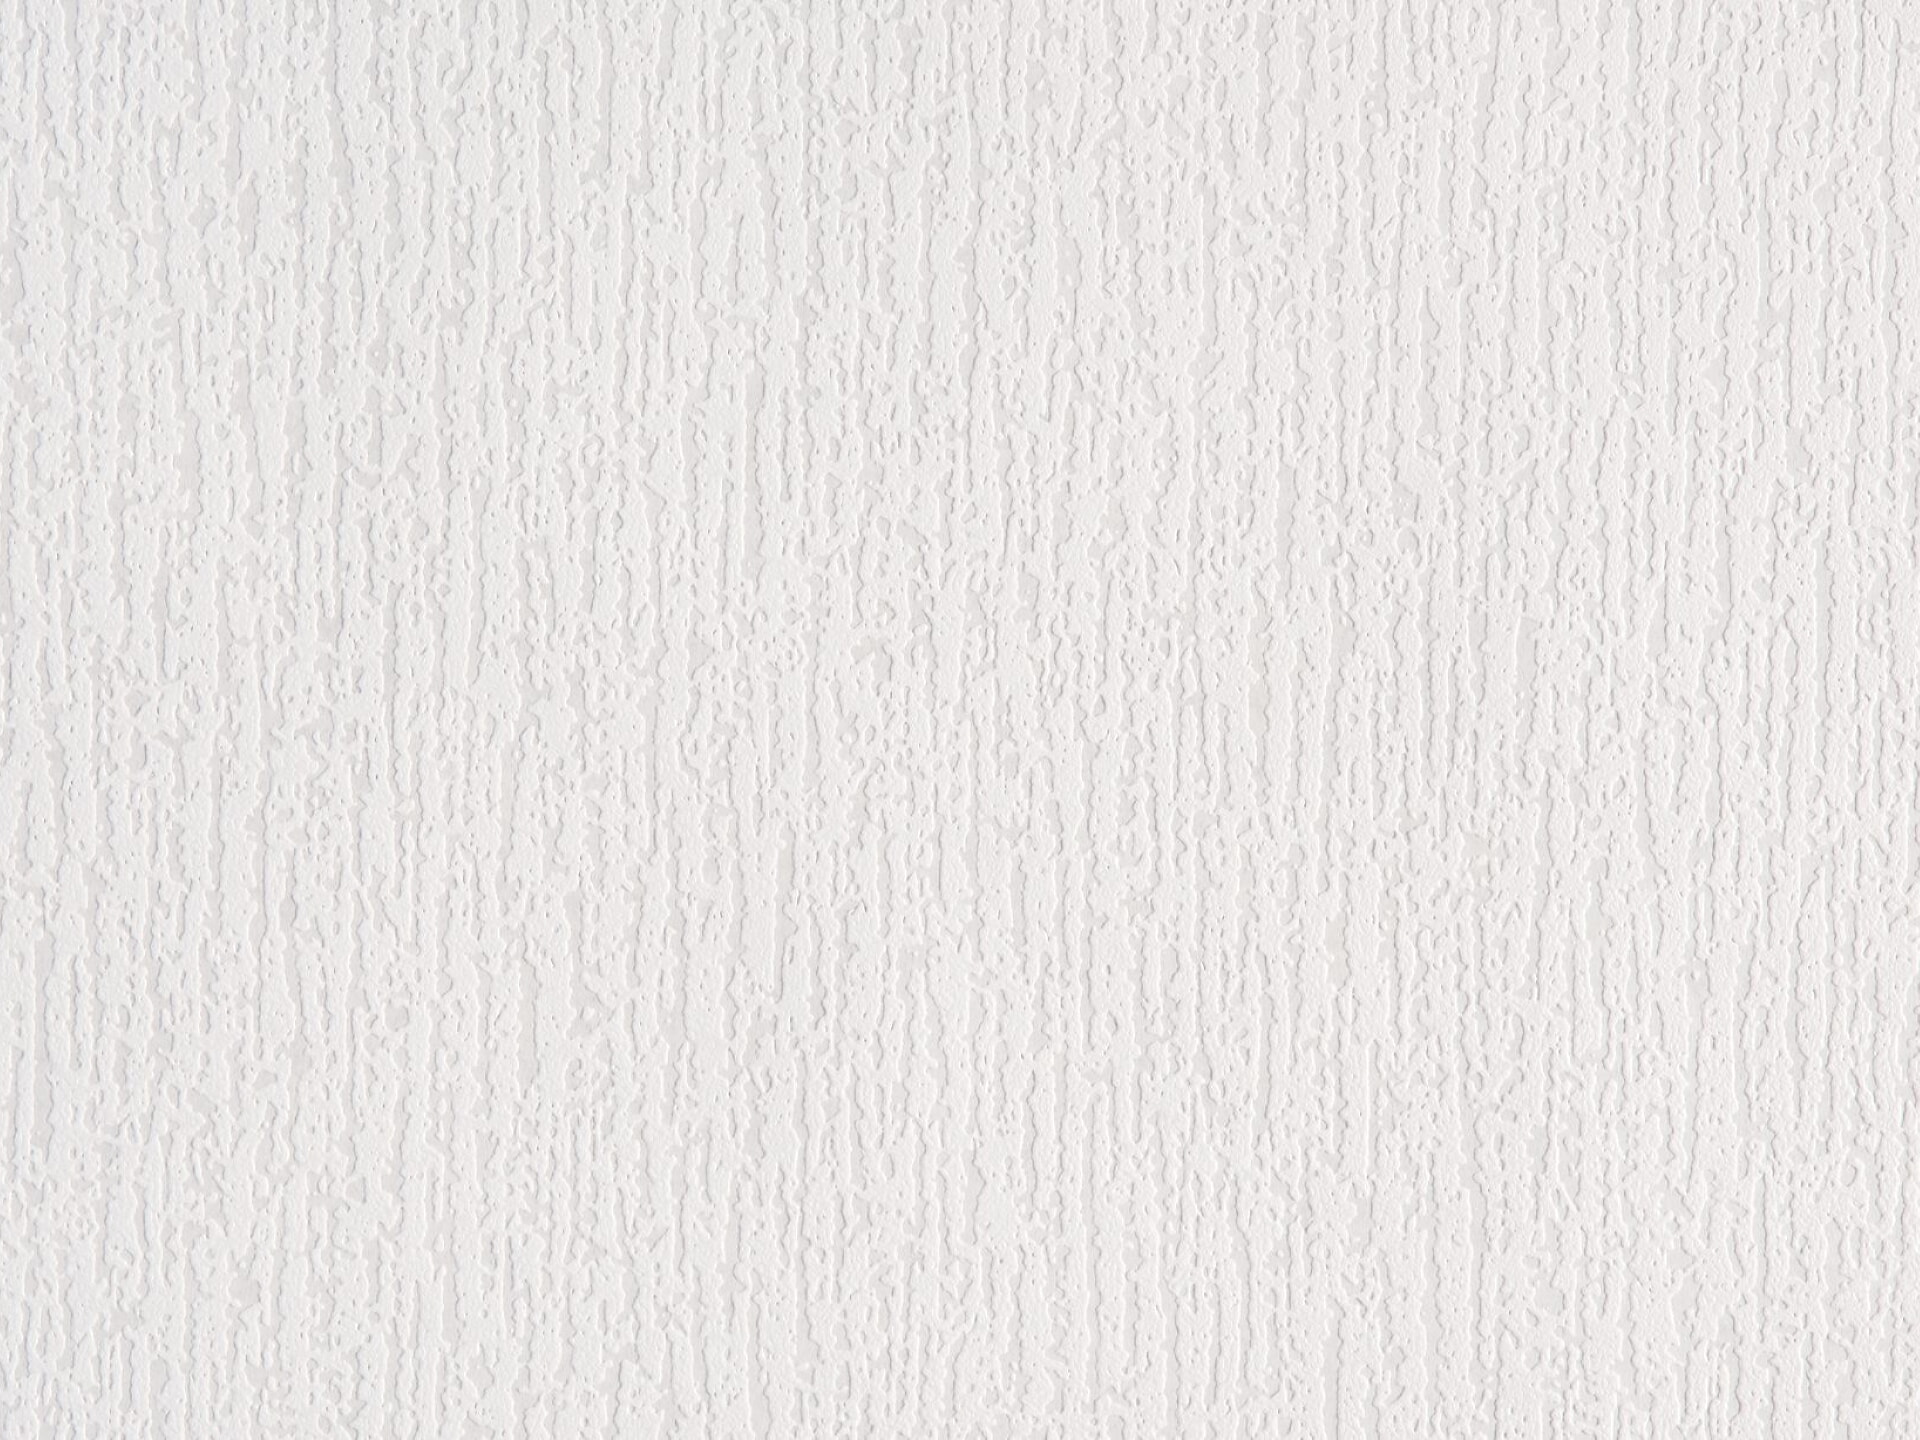 Флизелиновые обои 25 м. Бьюти е51225 обои флизелиновые под покраску (1,06х25м). Белые обои под покраску. Обои под покраску текстура. Обои под покраску Elysium.